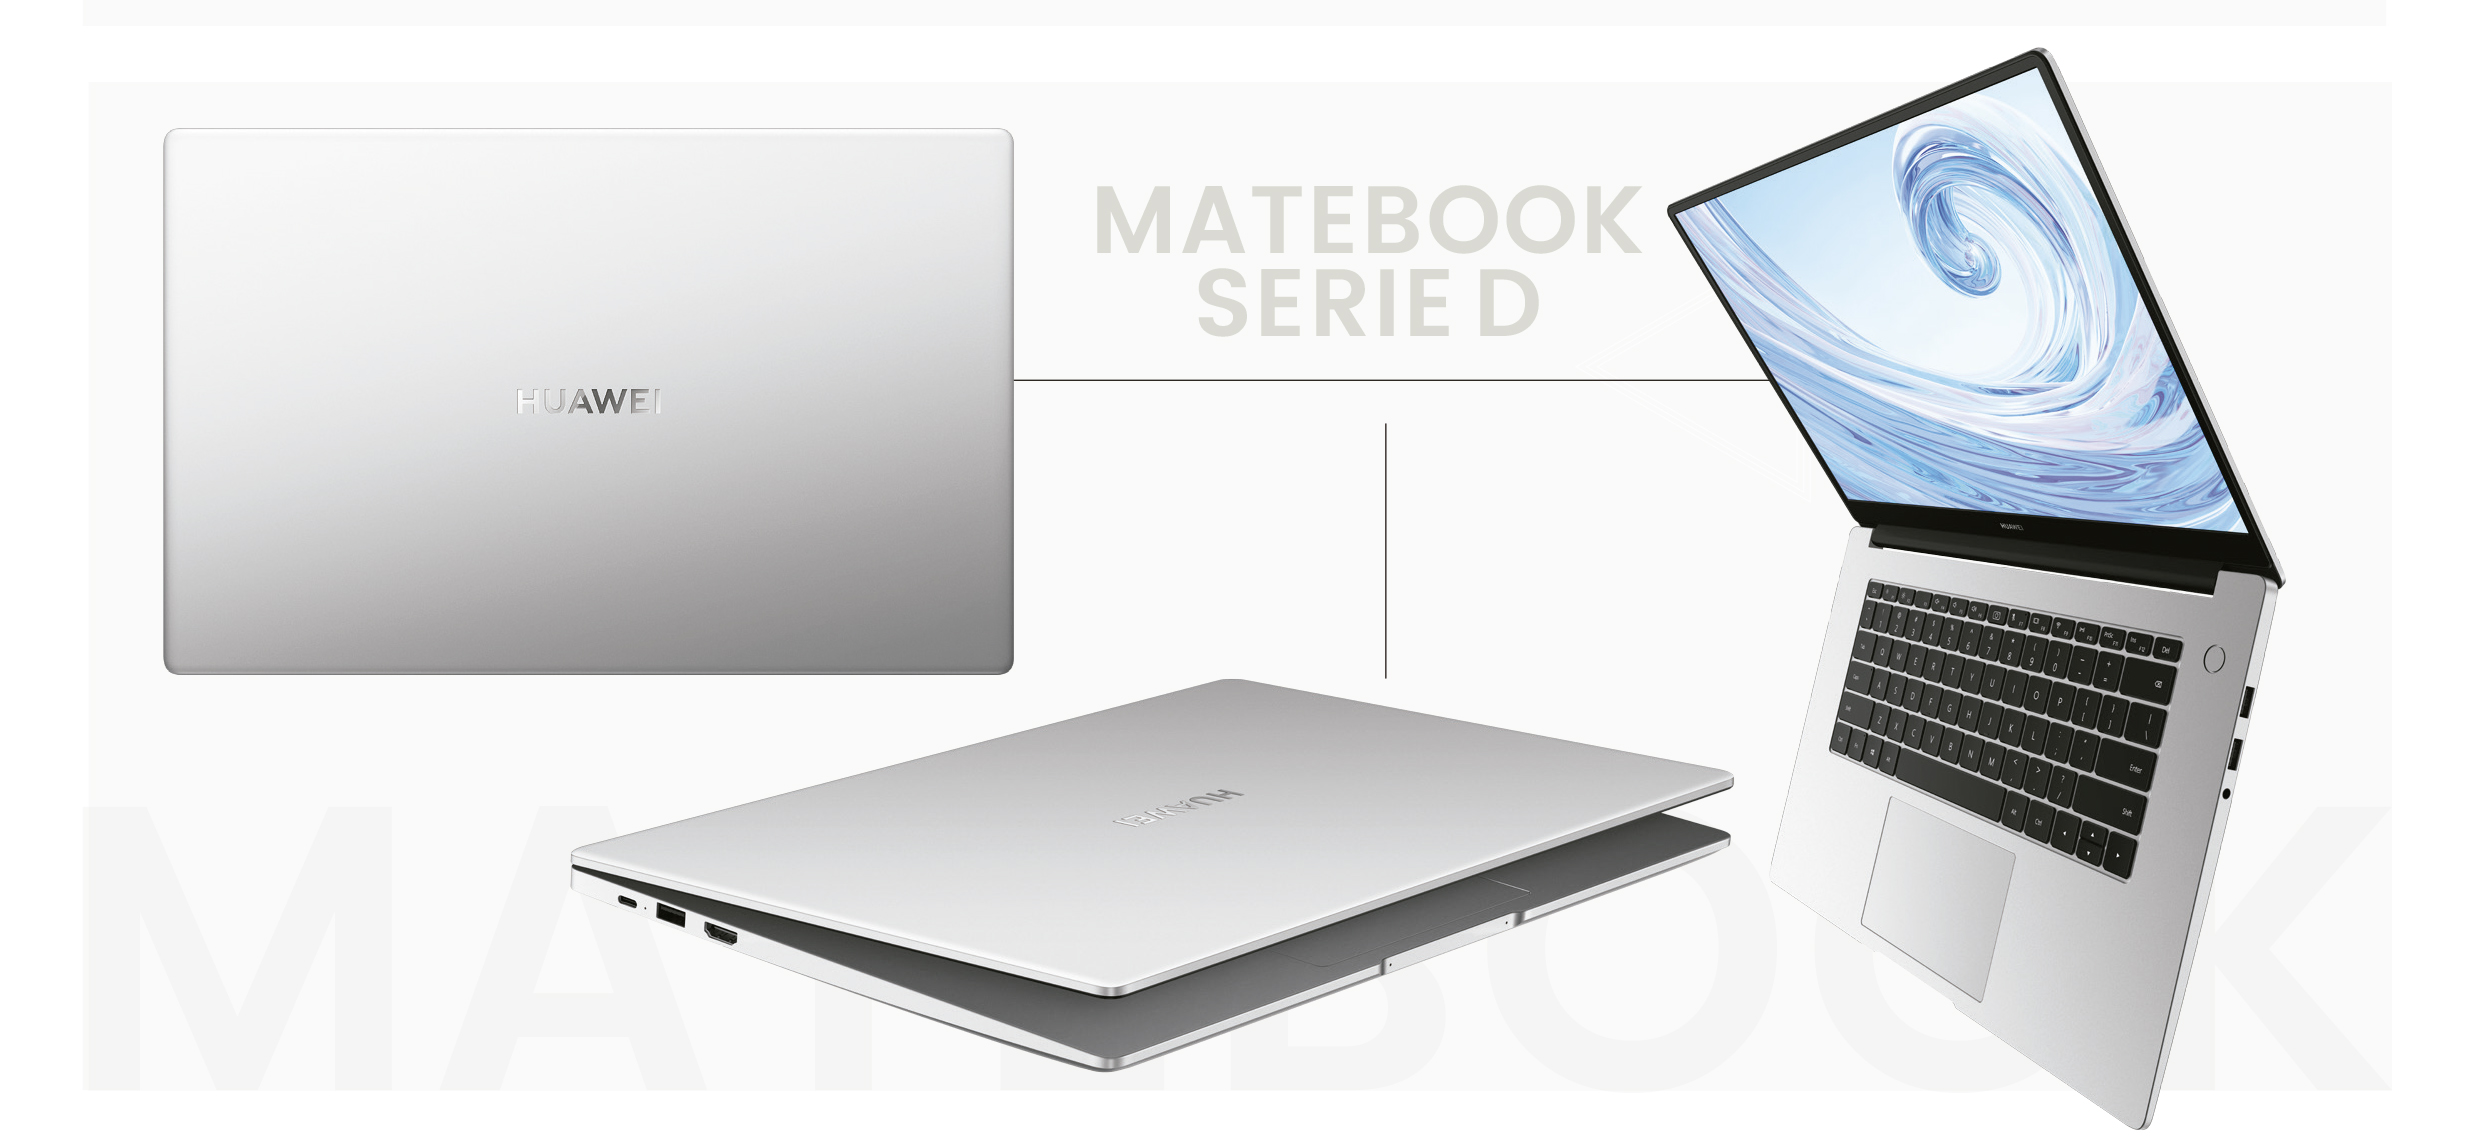 MateBook Serie D